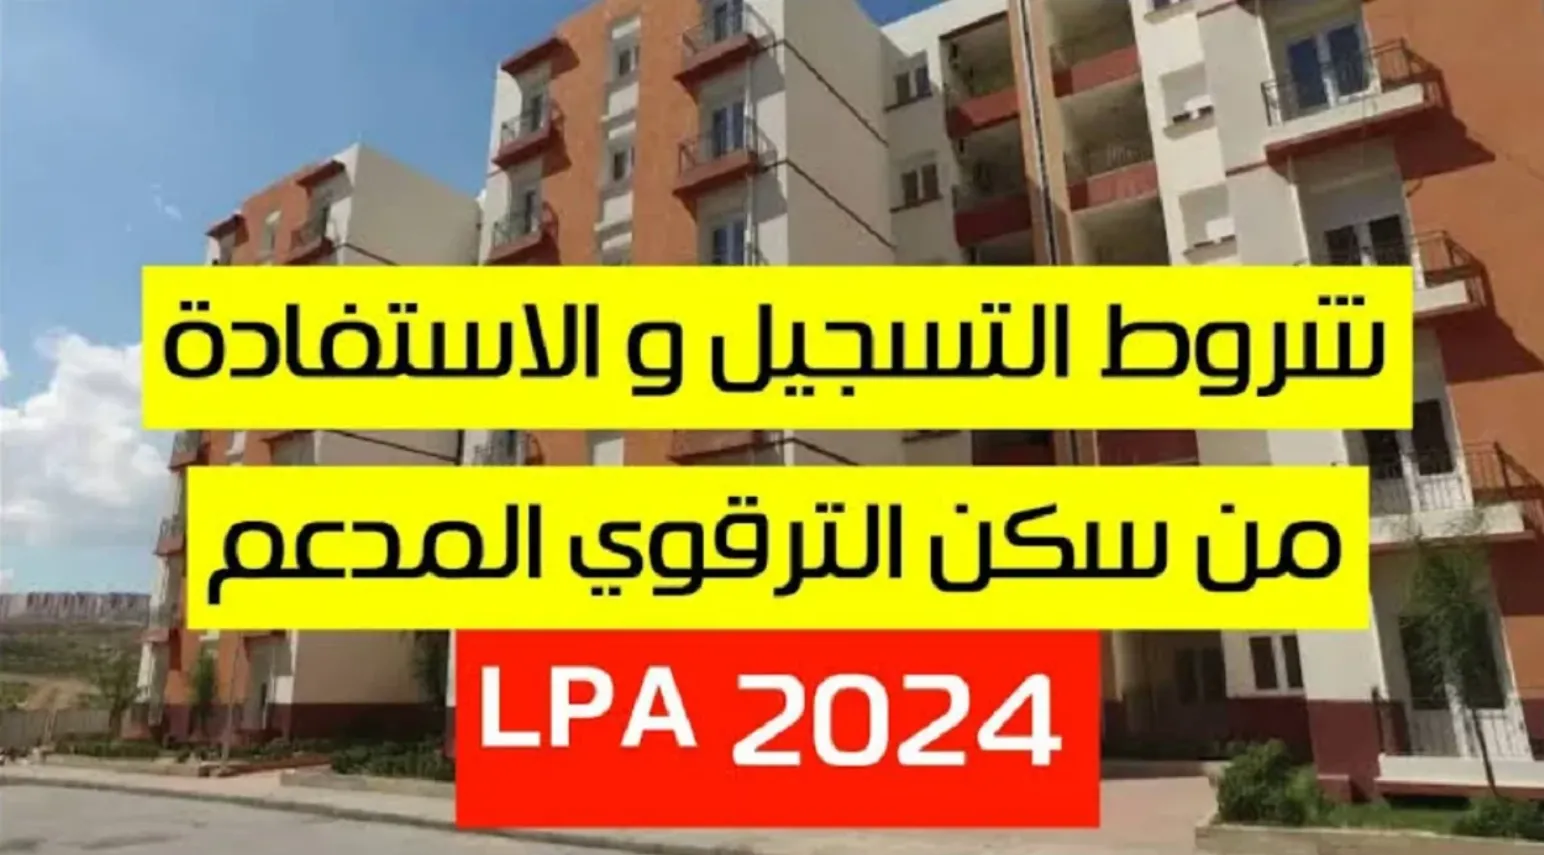 شروط السكن الترقوي الحر وانطلاق عملية الاكتتاب عبر 23 ولاية في الجزائر